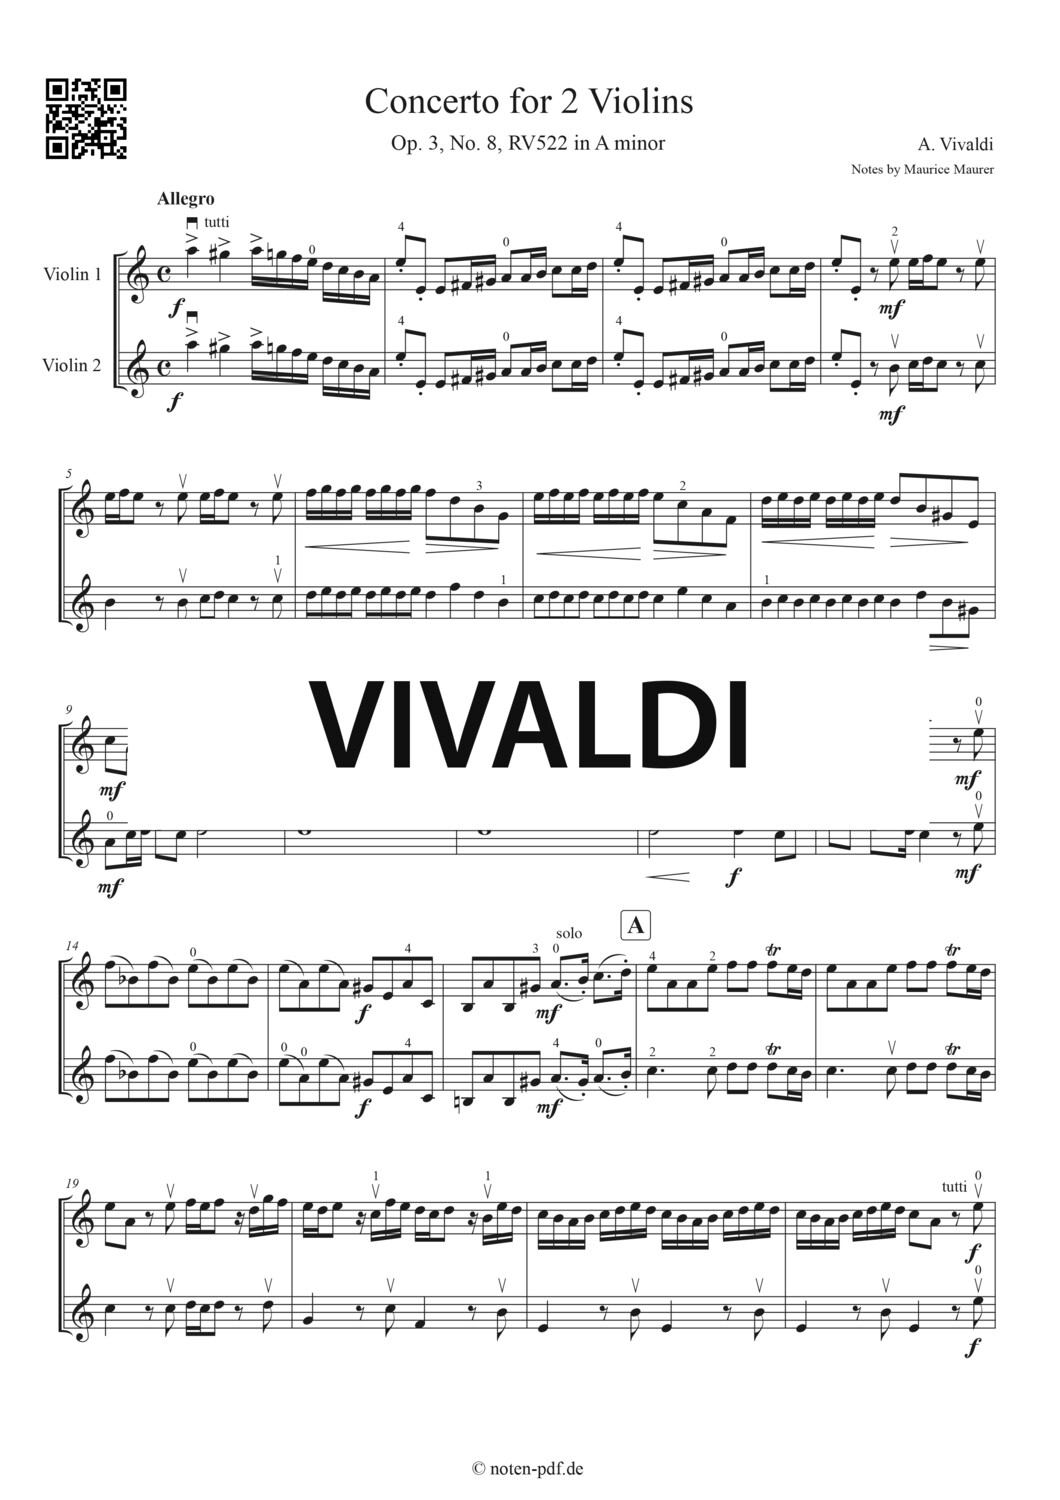 Vivaldi: Concerto for 2 Violins in A minor - All Movement + MP3